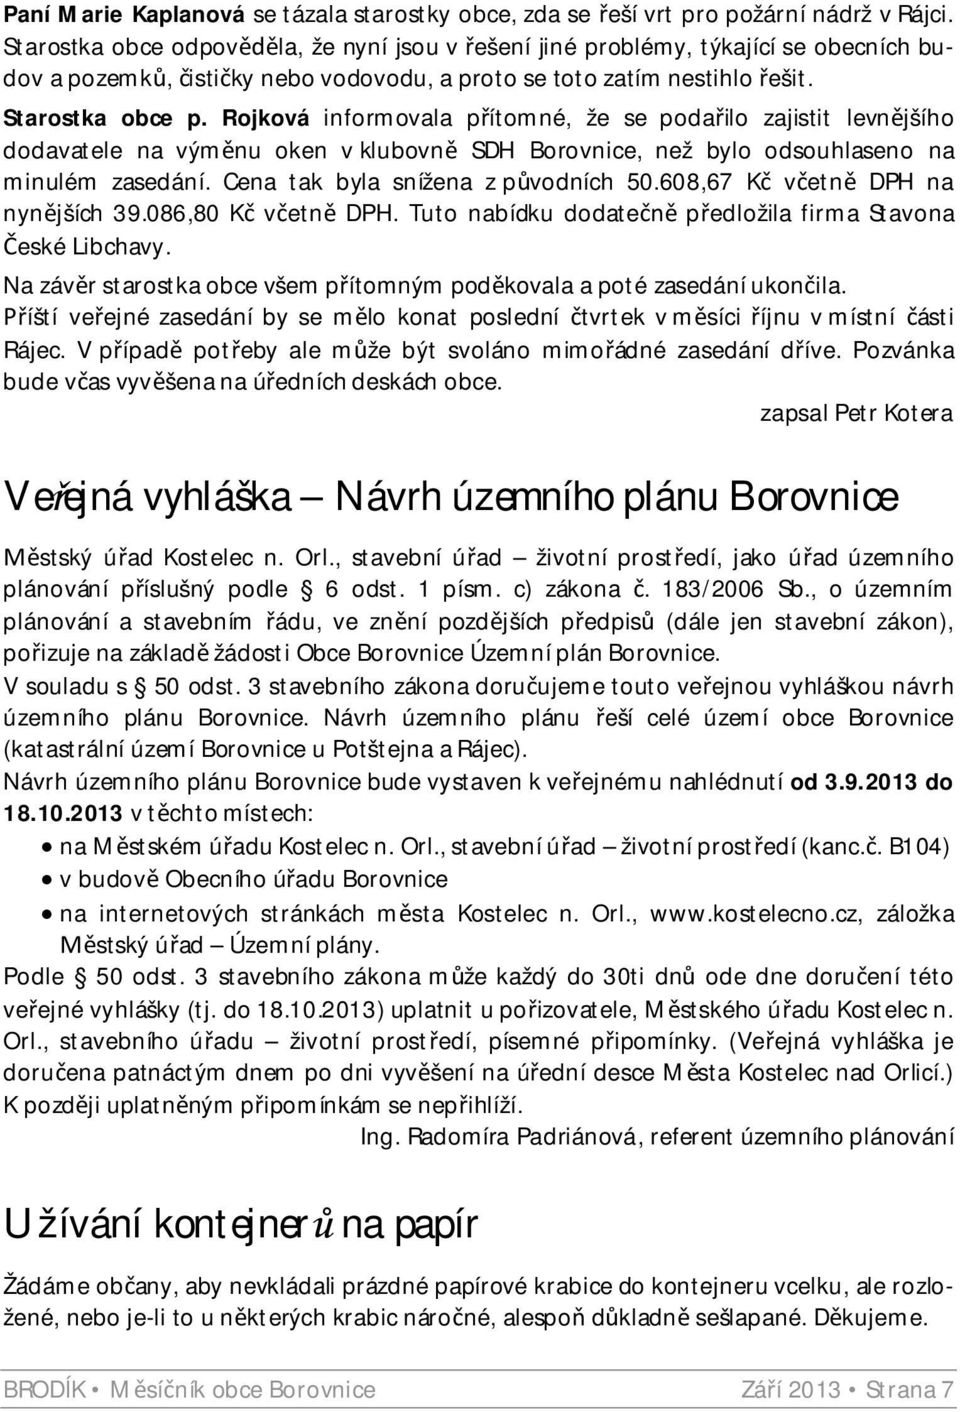 Rojková informovala p ítomné, že se poda ilo zajistit levn jšího dodavatele na vým nu oken v klubovn SDH Borovnice, než bylo odsouhlaseno na minulém zasedání. Cena tak byla snížena z p vodních 50.